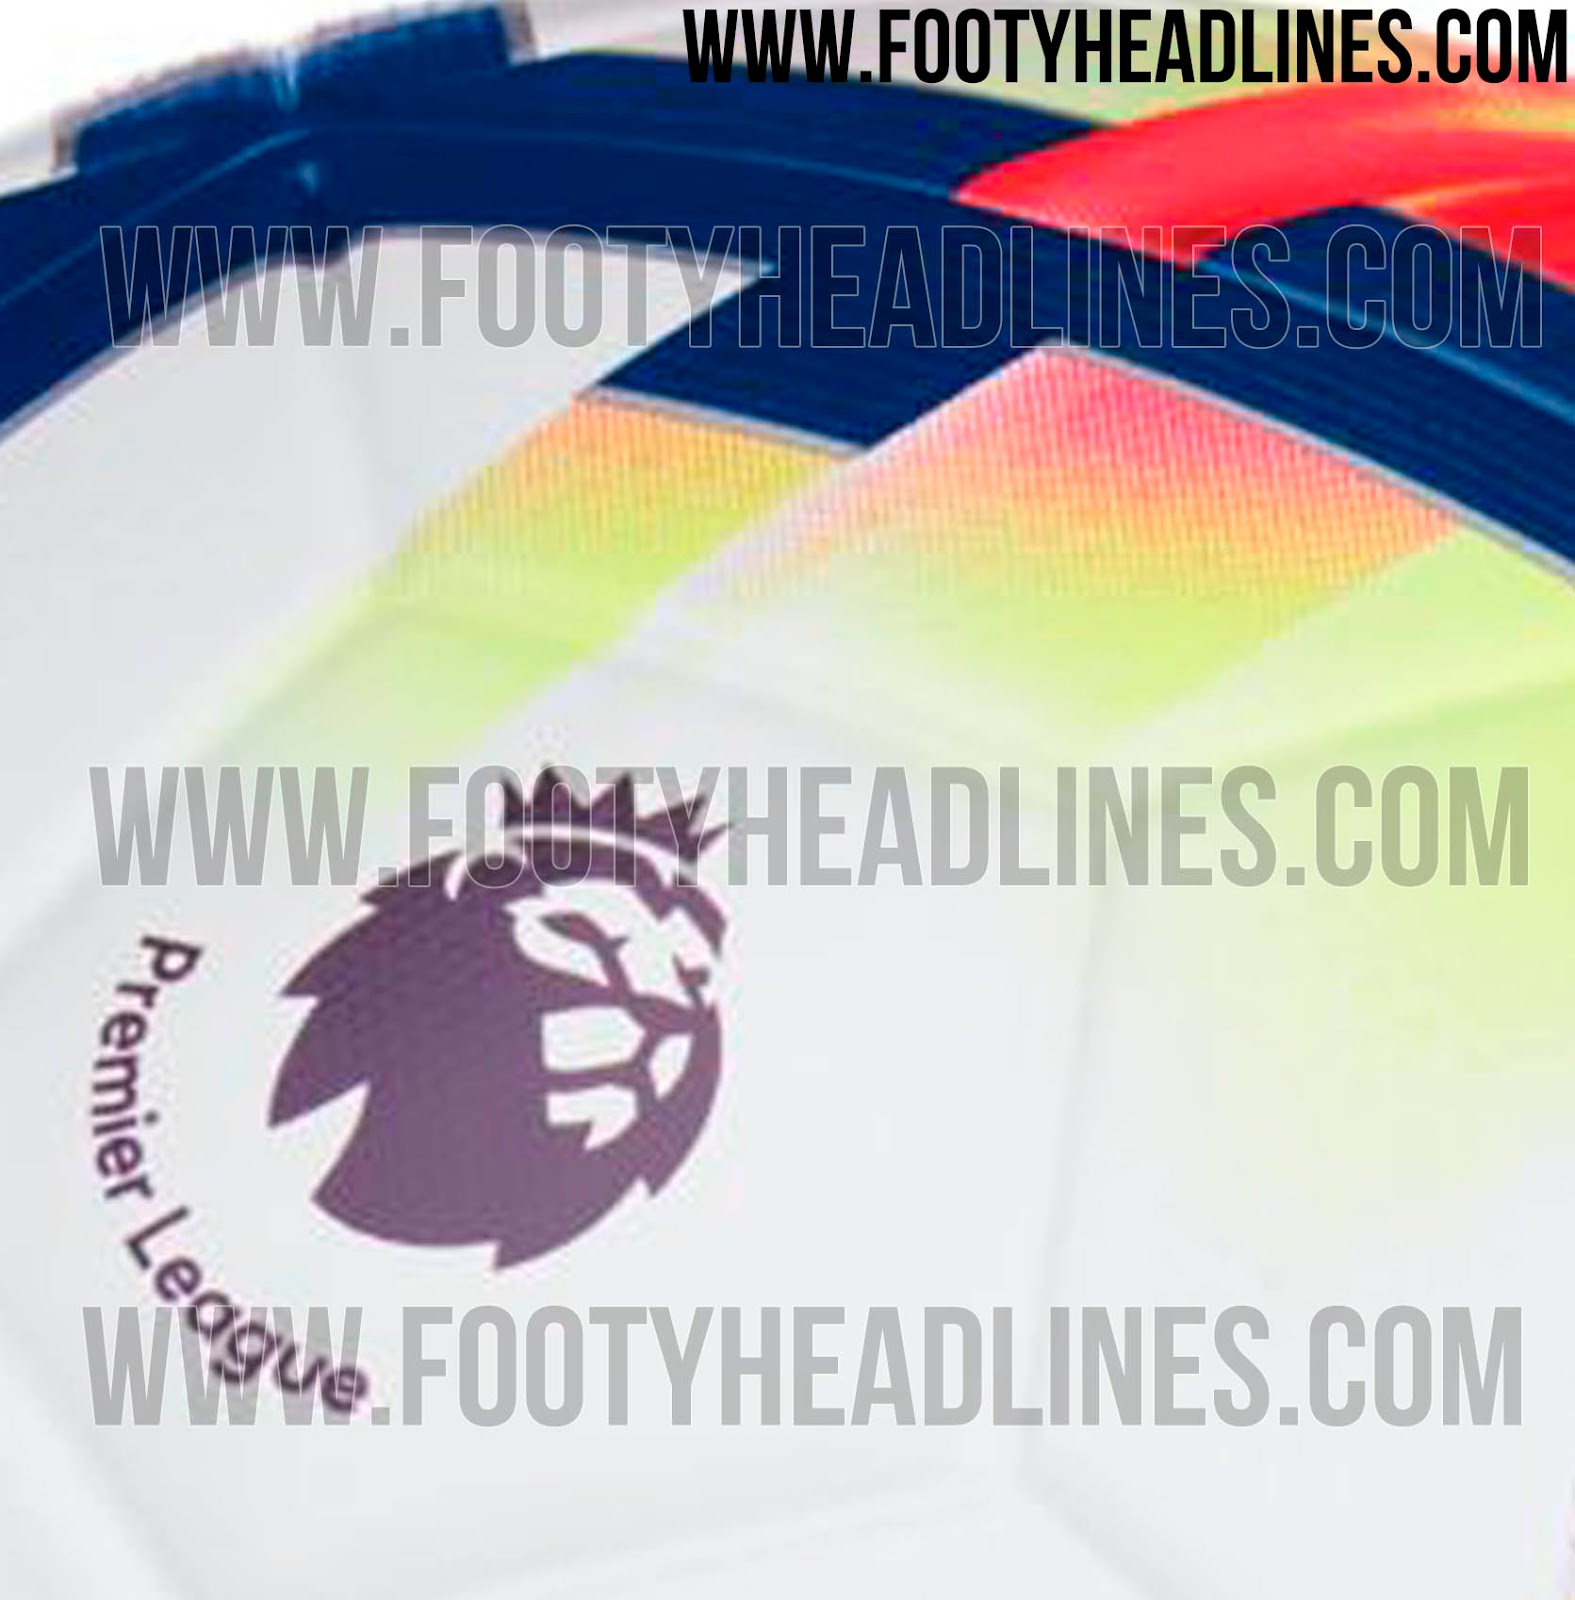 Nike 2017-18 Premier League Ball Leaked - Footy Headlines